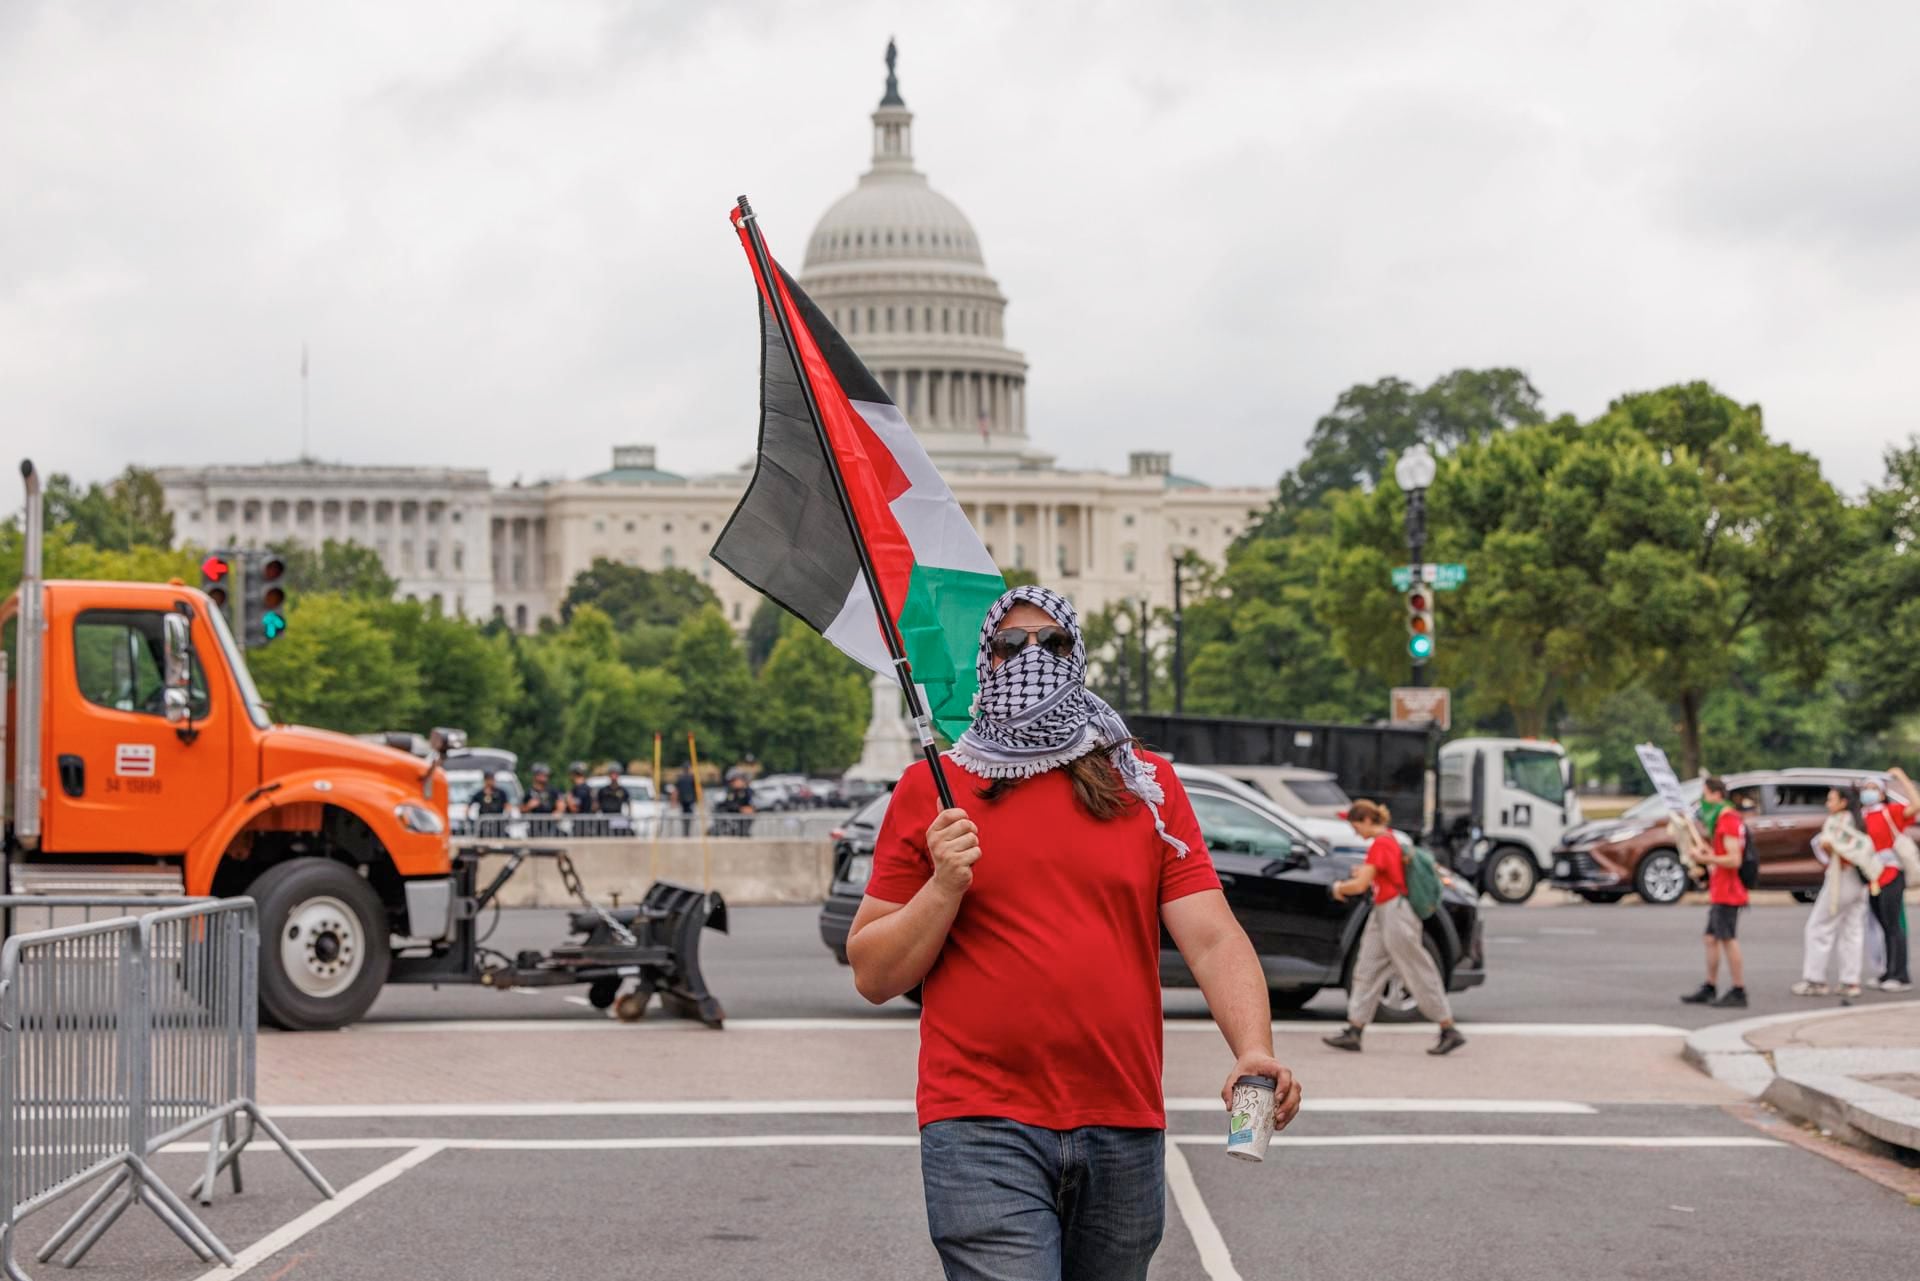 Estadounidenses judíos y otras personas protestan afuera del Capitolio ante la visita de Netanyahu, por la guerra en Palestina.